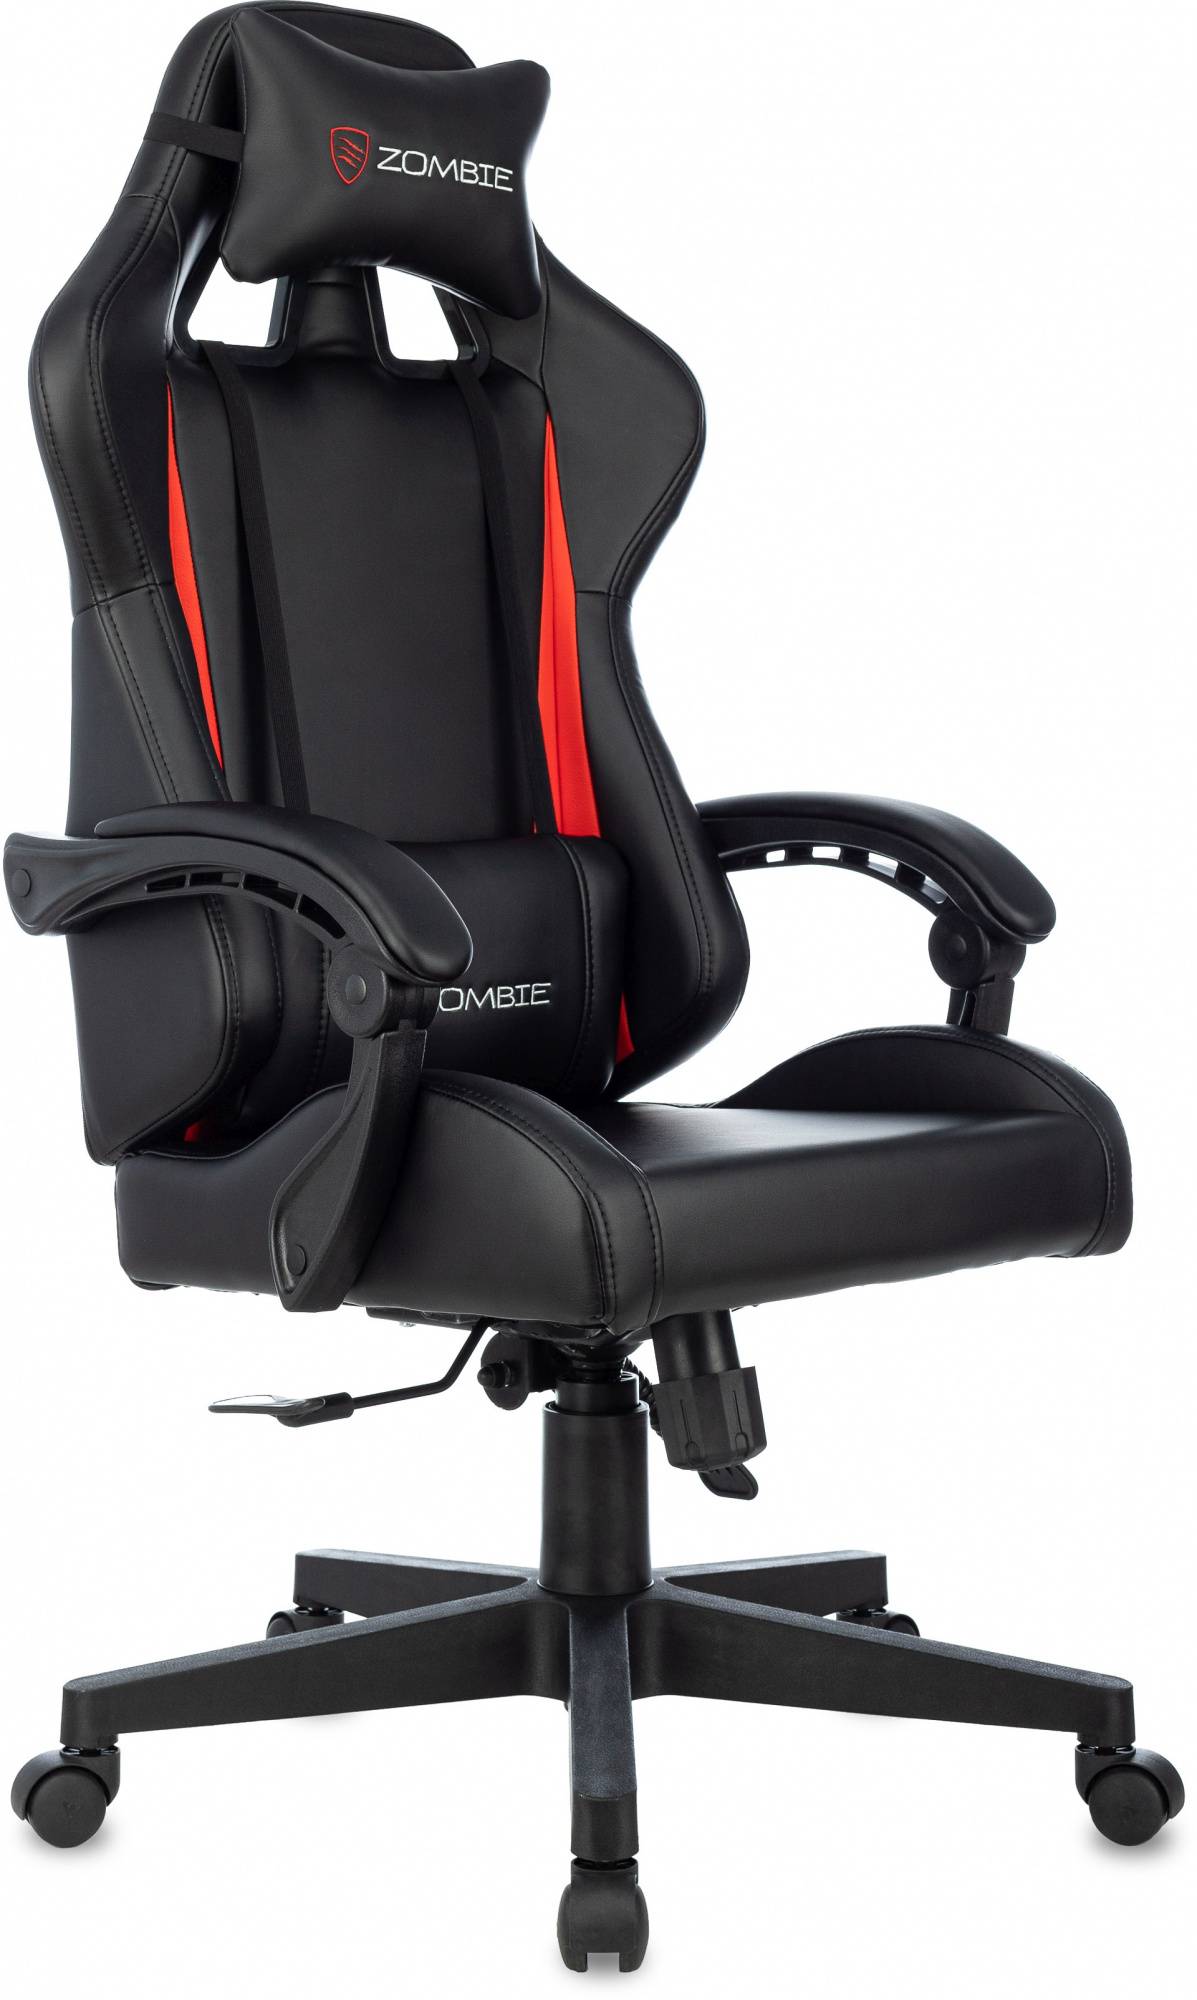 Кресло игровое Zombie GAME TETRA, обивка: эко.кожа, цвет: черный/красный